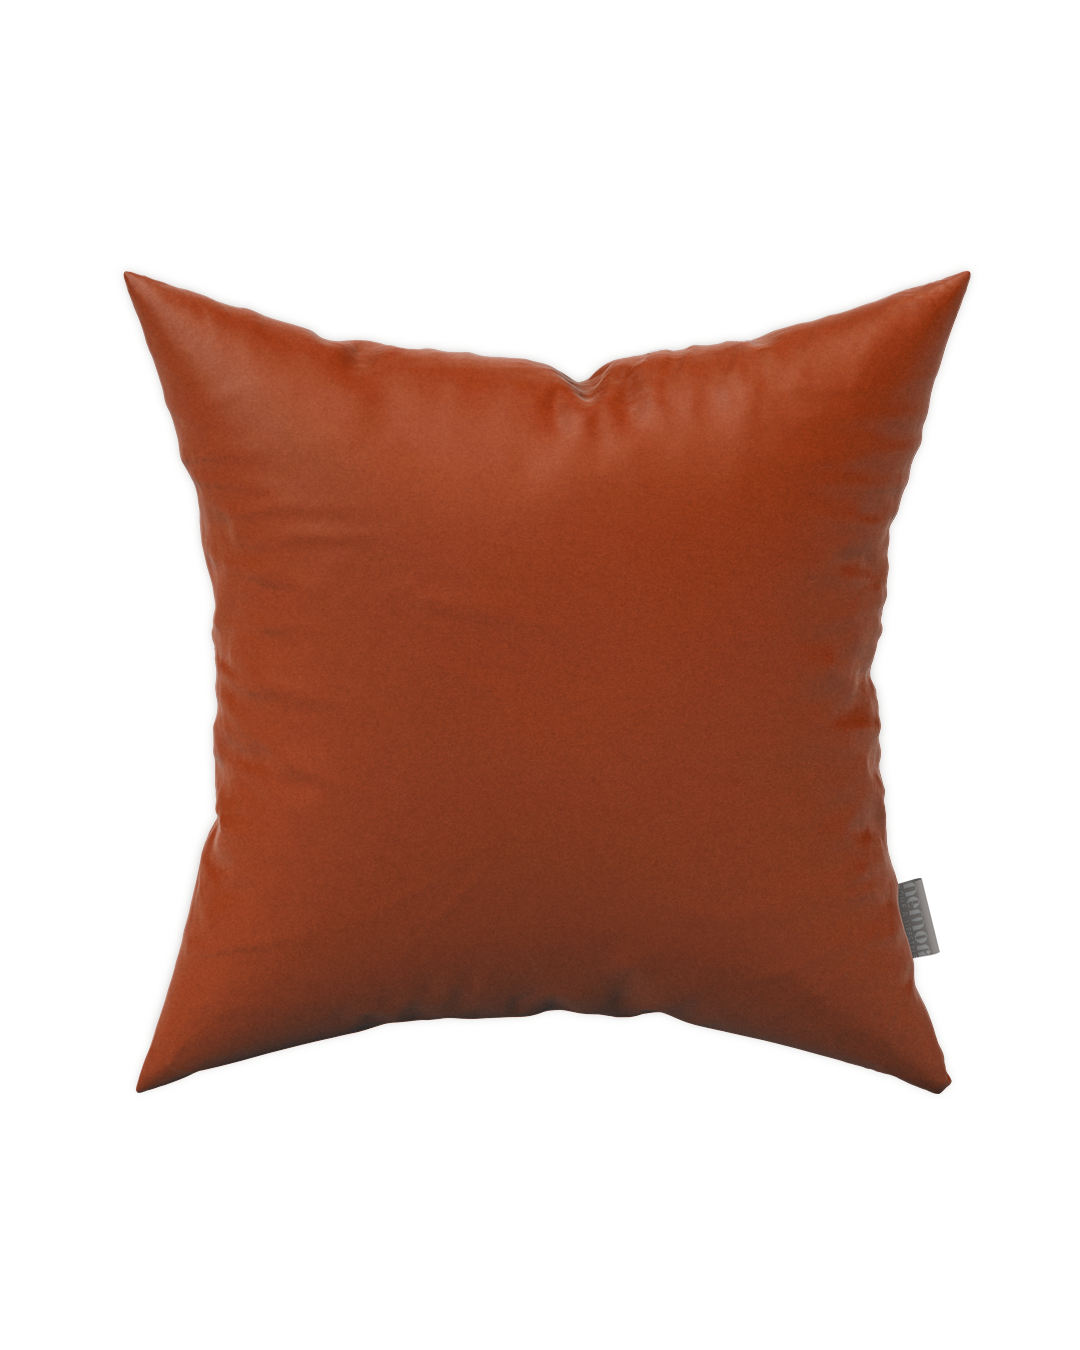 Alpin 01 Lavaredo Pillow Cover